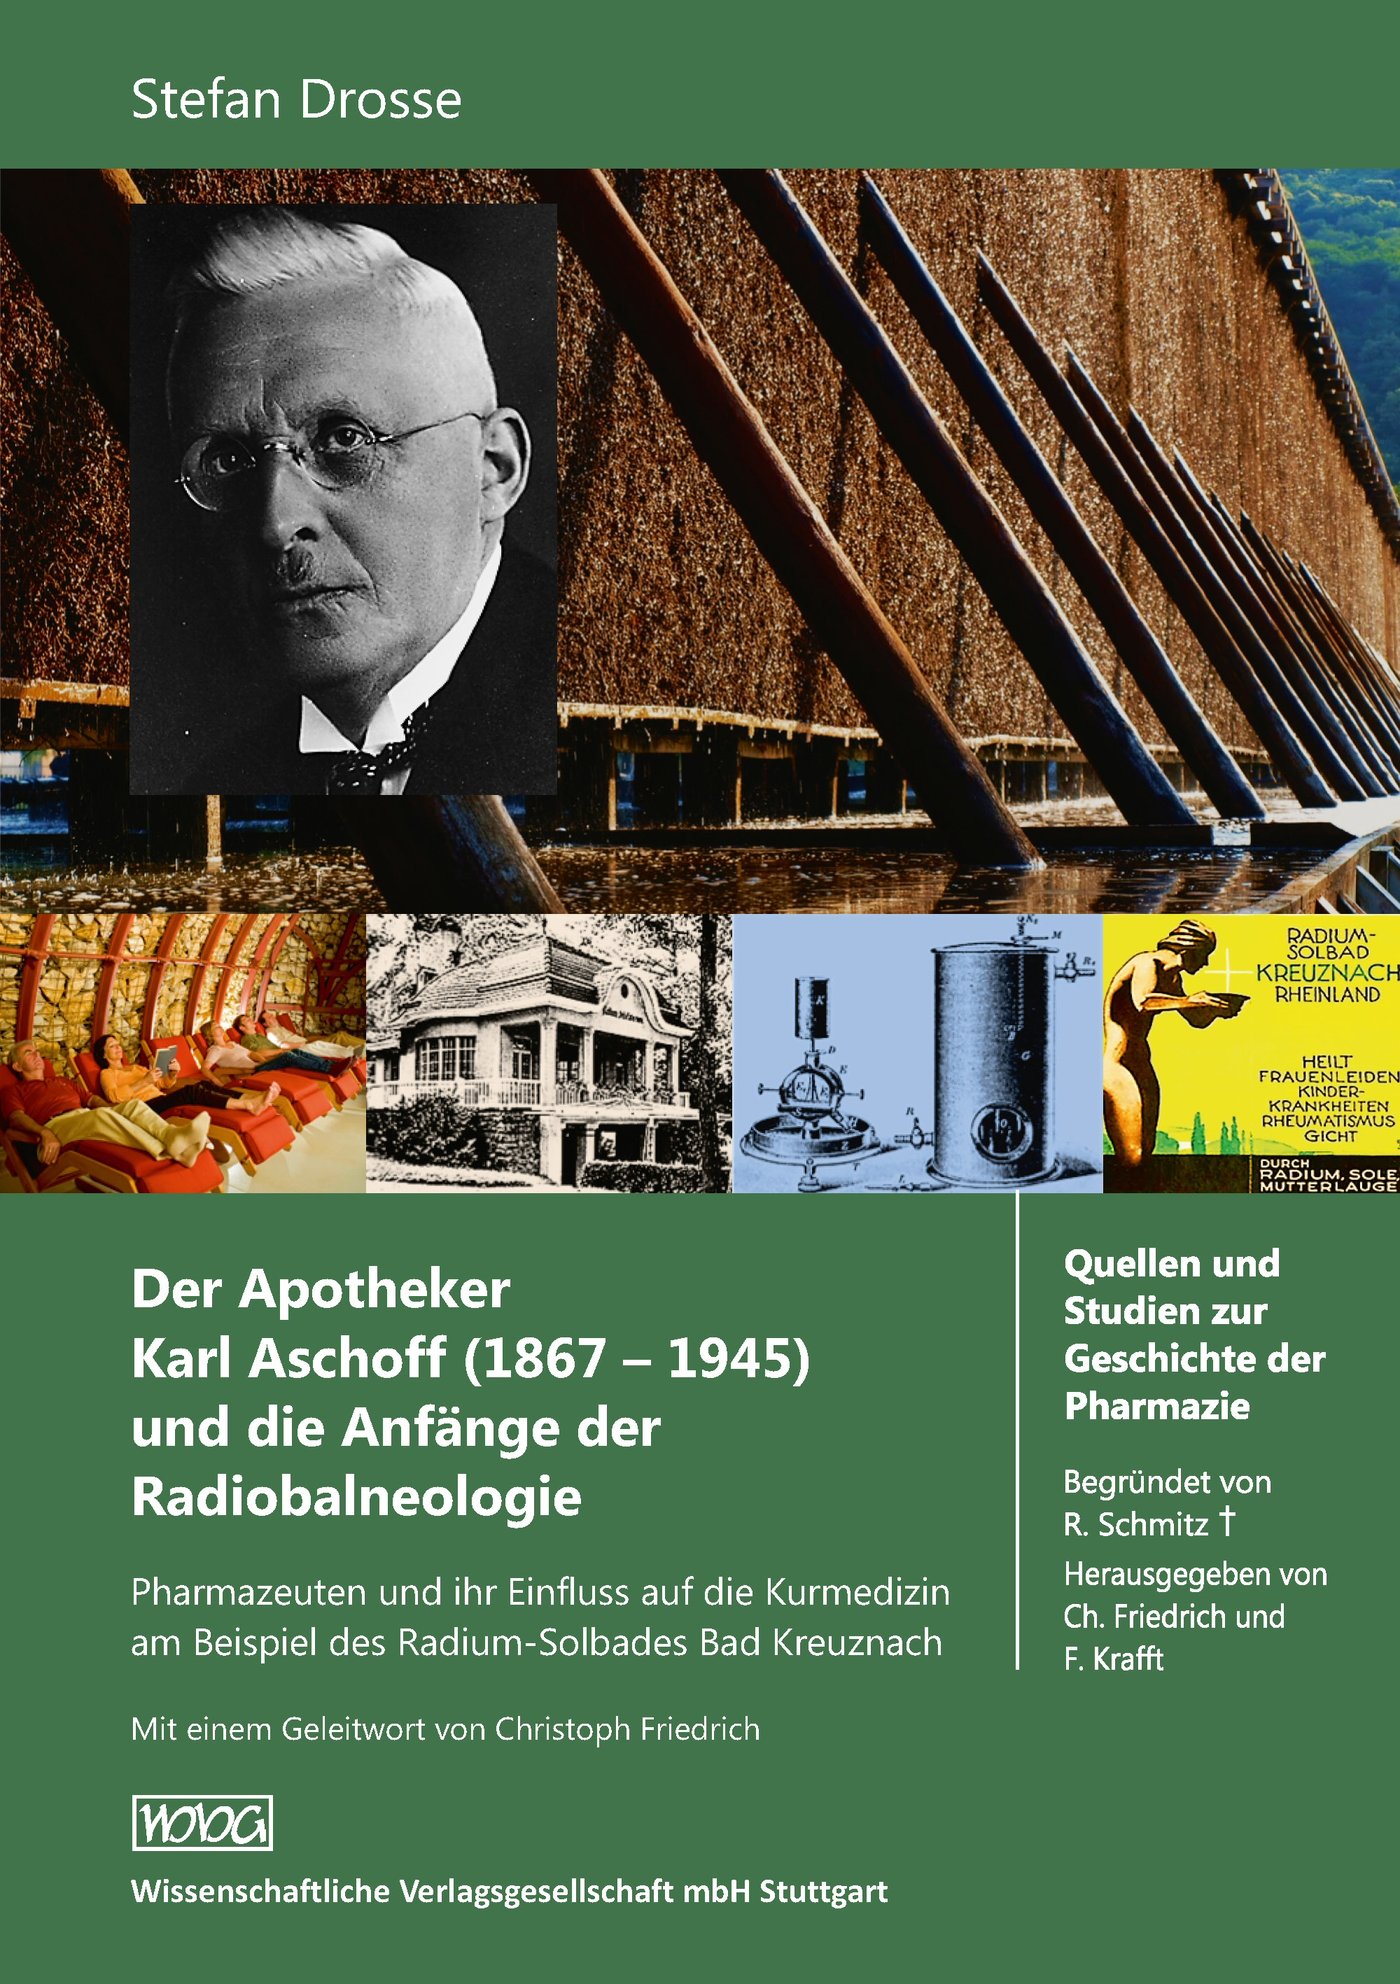 Der Apotheker Karl Aschoff (1867-1945) und die Anfänge der
Radiobalneologie